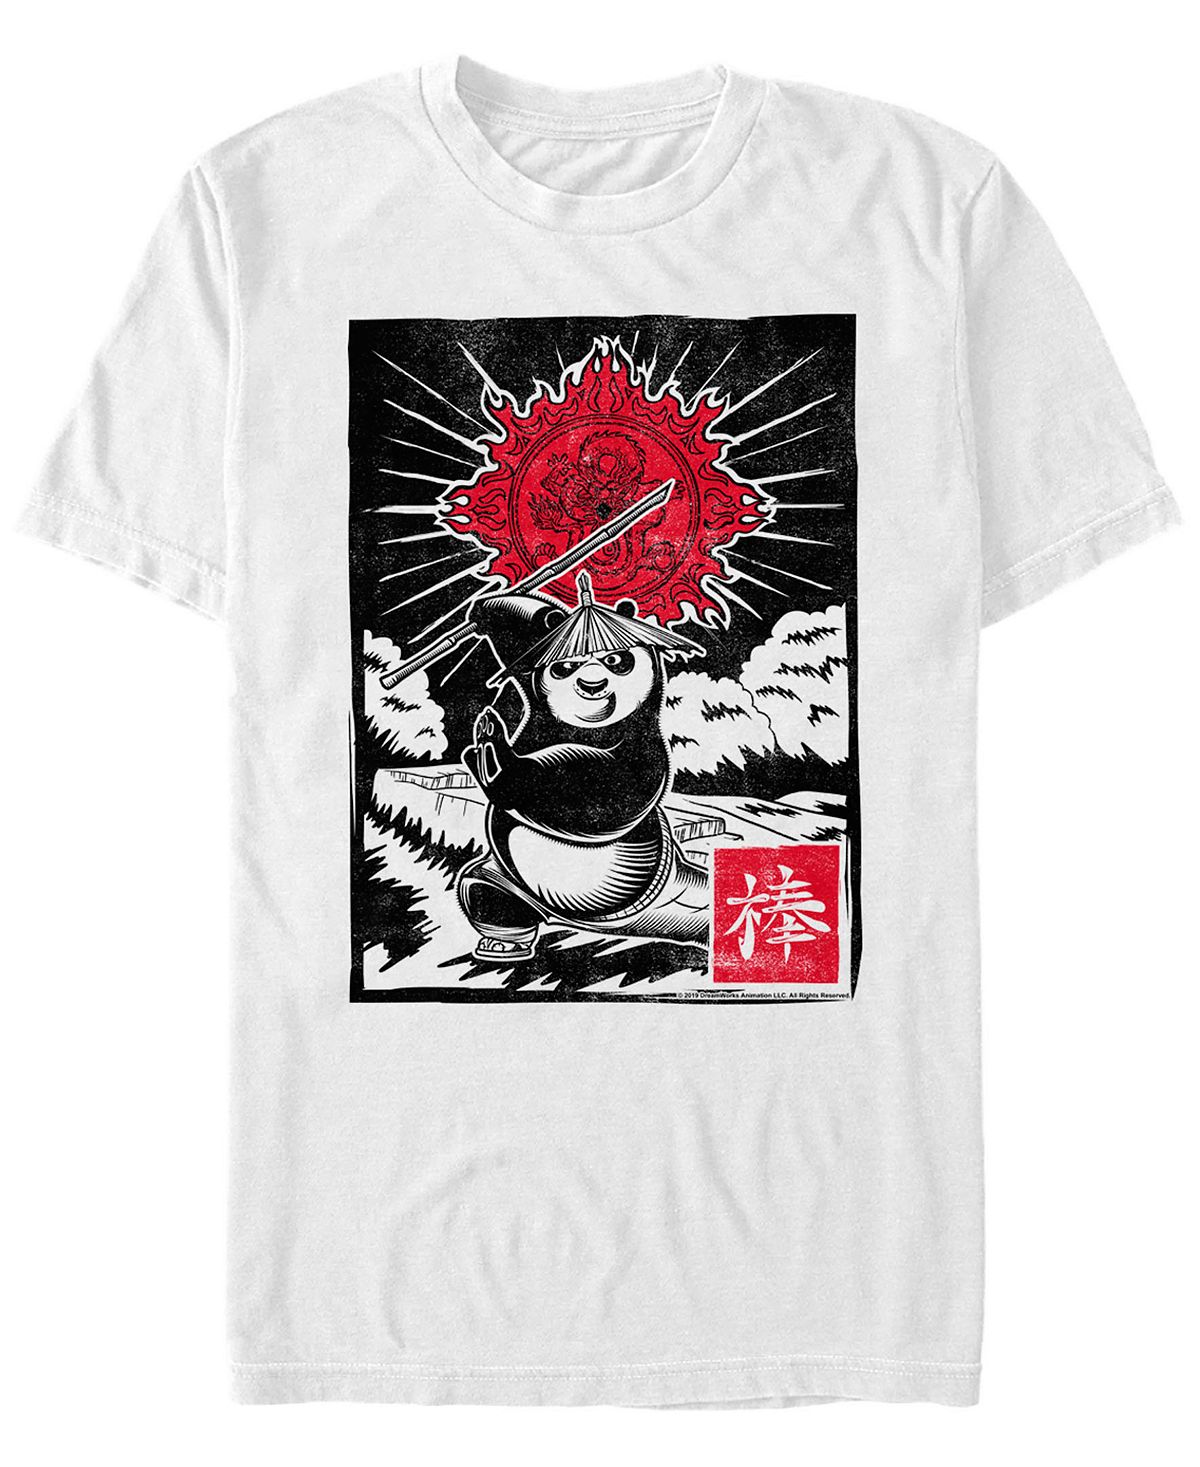 кунг фу панда 2 тайна маленького по мультколлекция Кунг-фу панда мужская футболка с коротким рукавом с плакатом po warrior Fifth Sun, белый